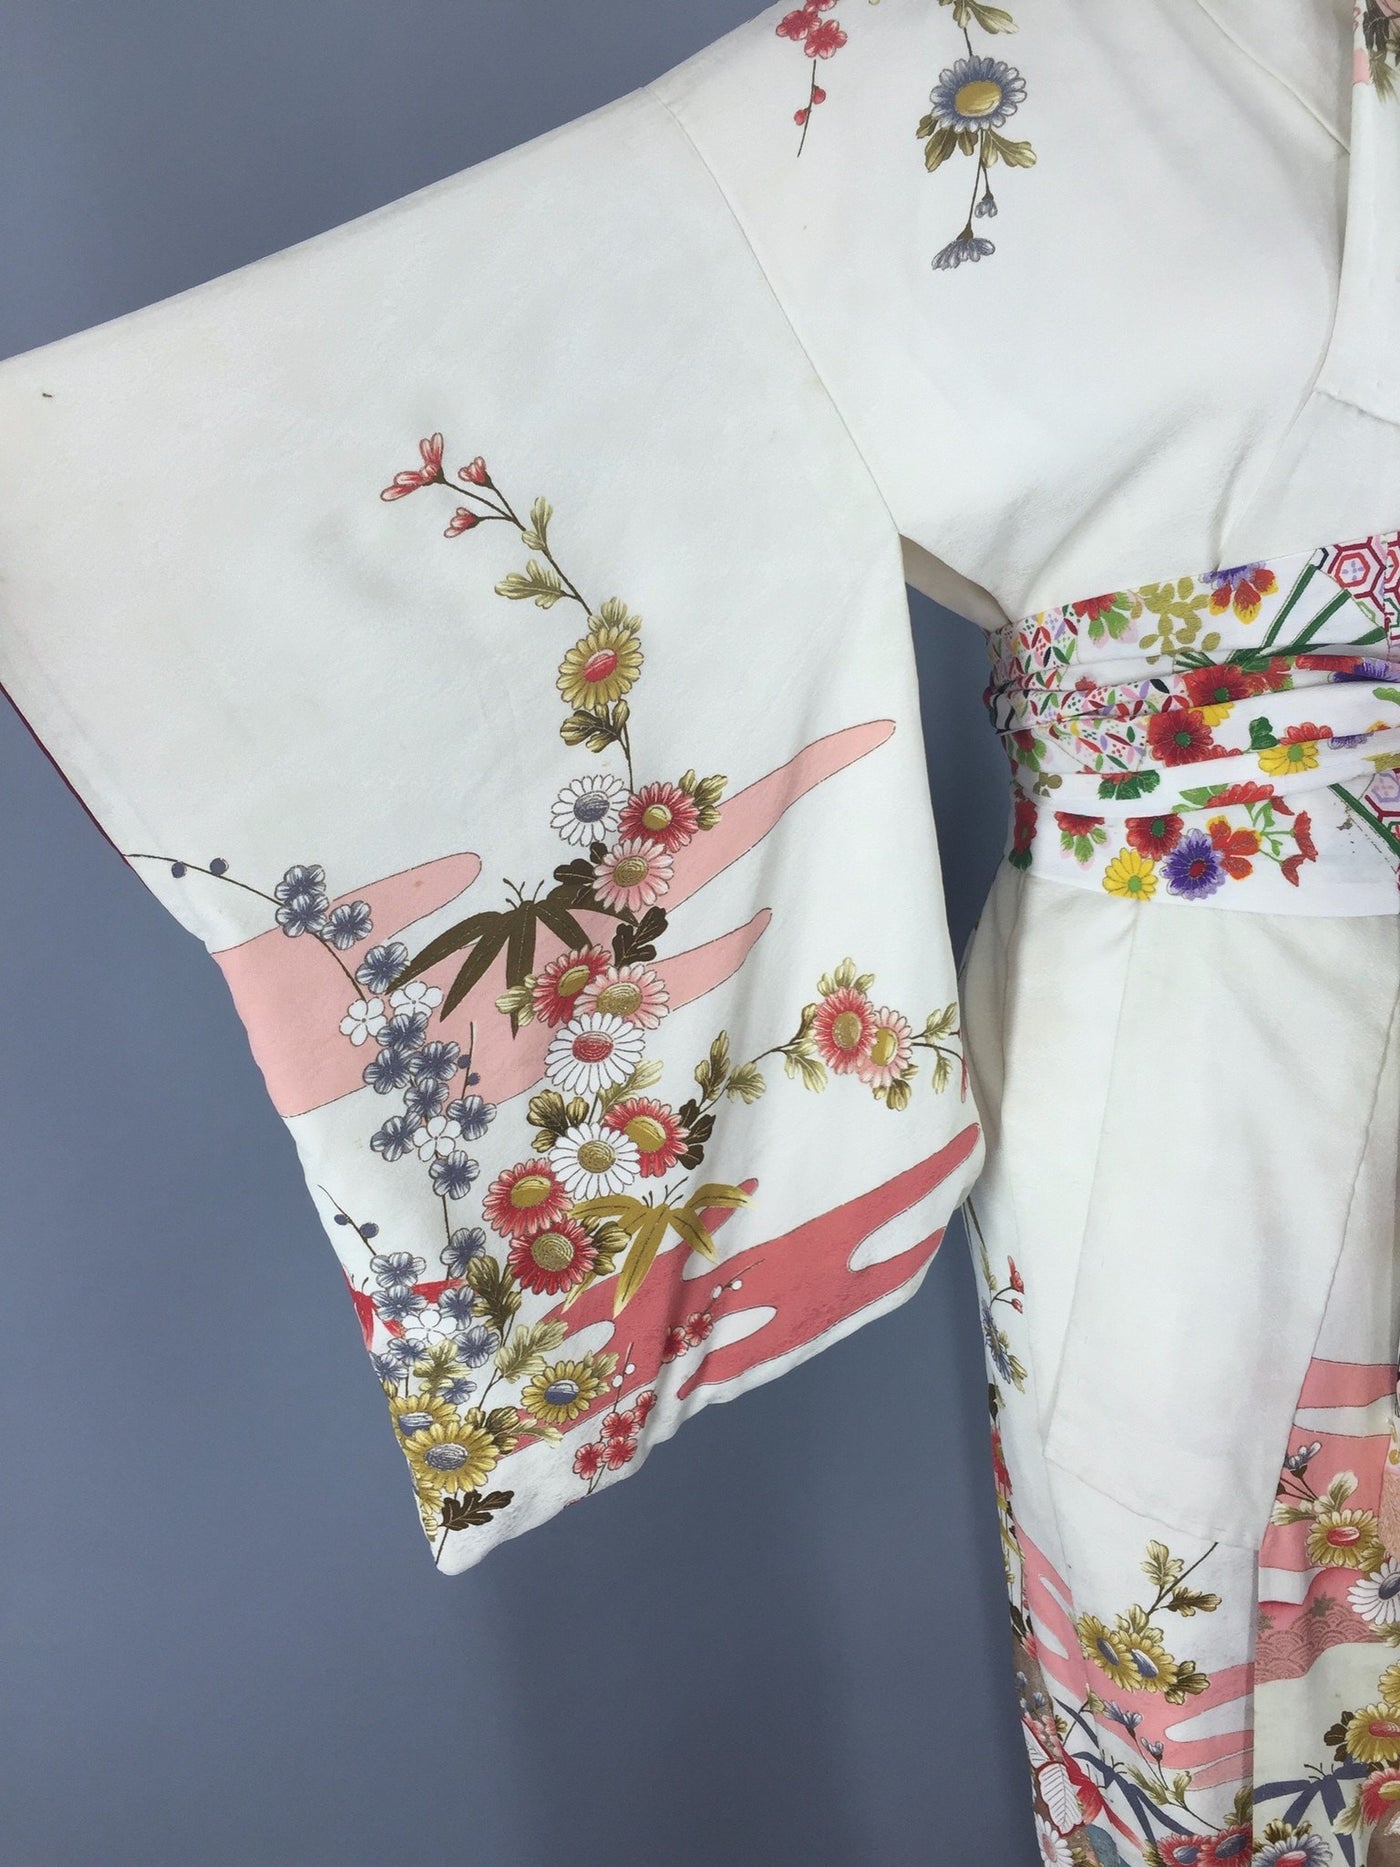 Vintage 1940s Silk Kimono Robe / White Ivory Floral Print - ThisBlueBird